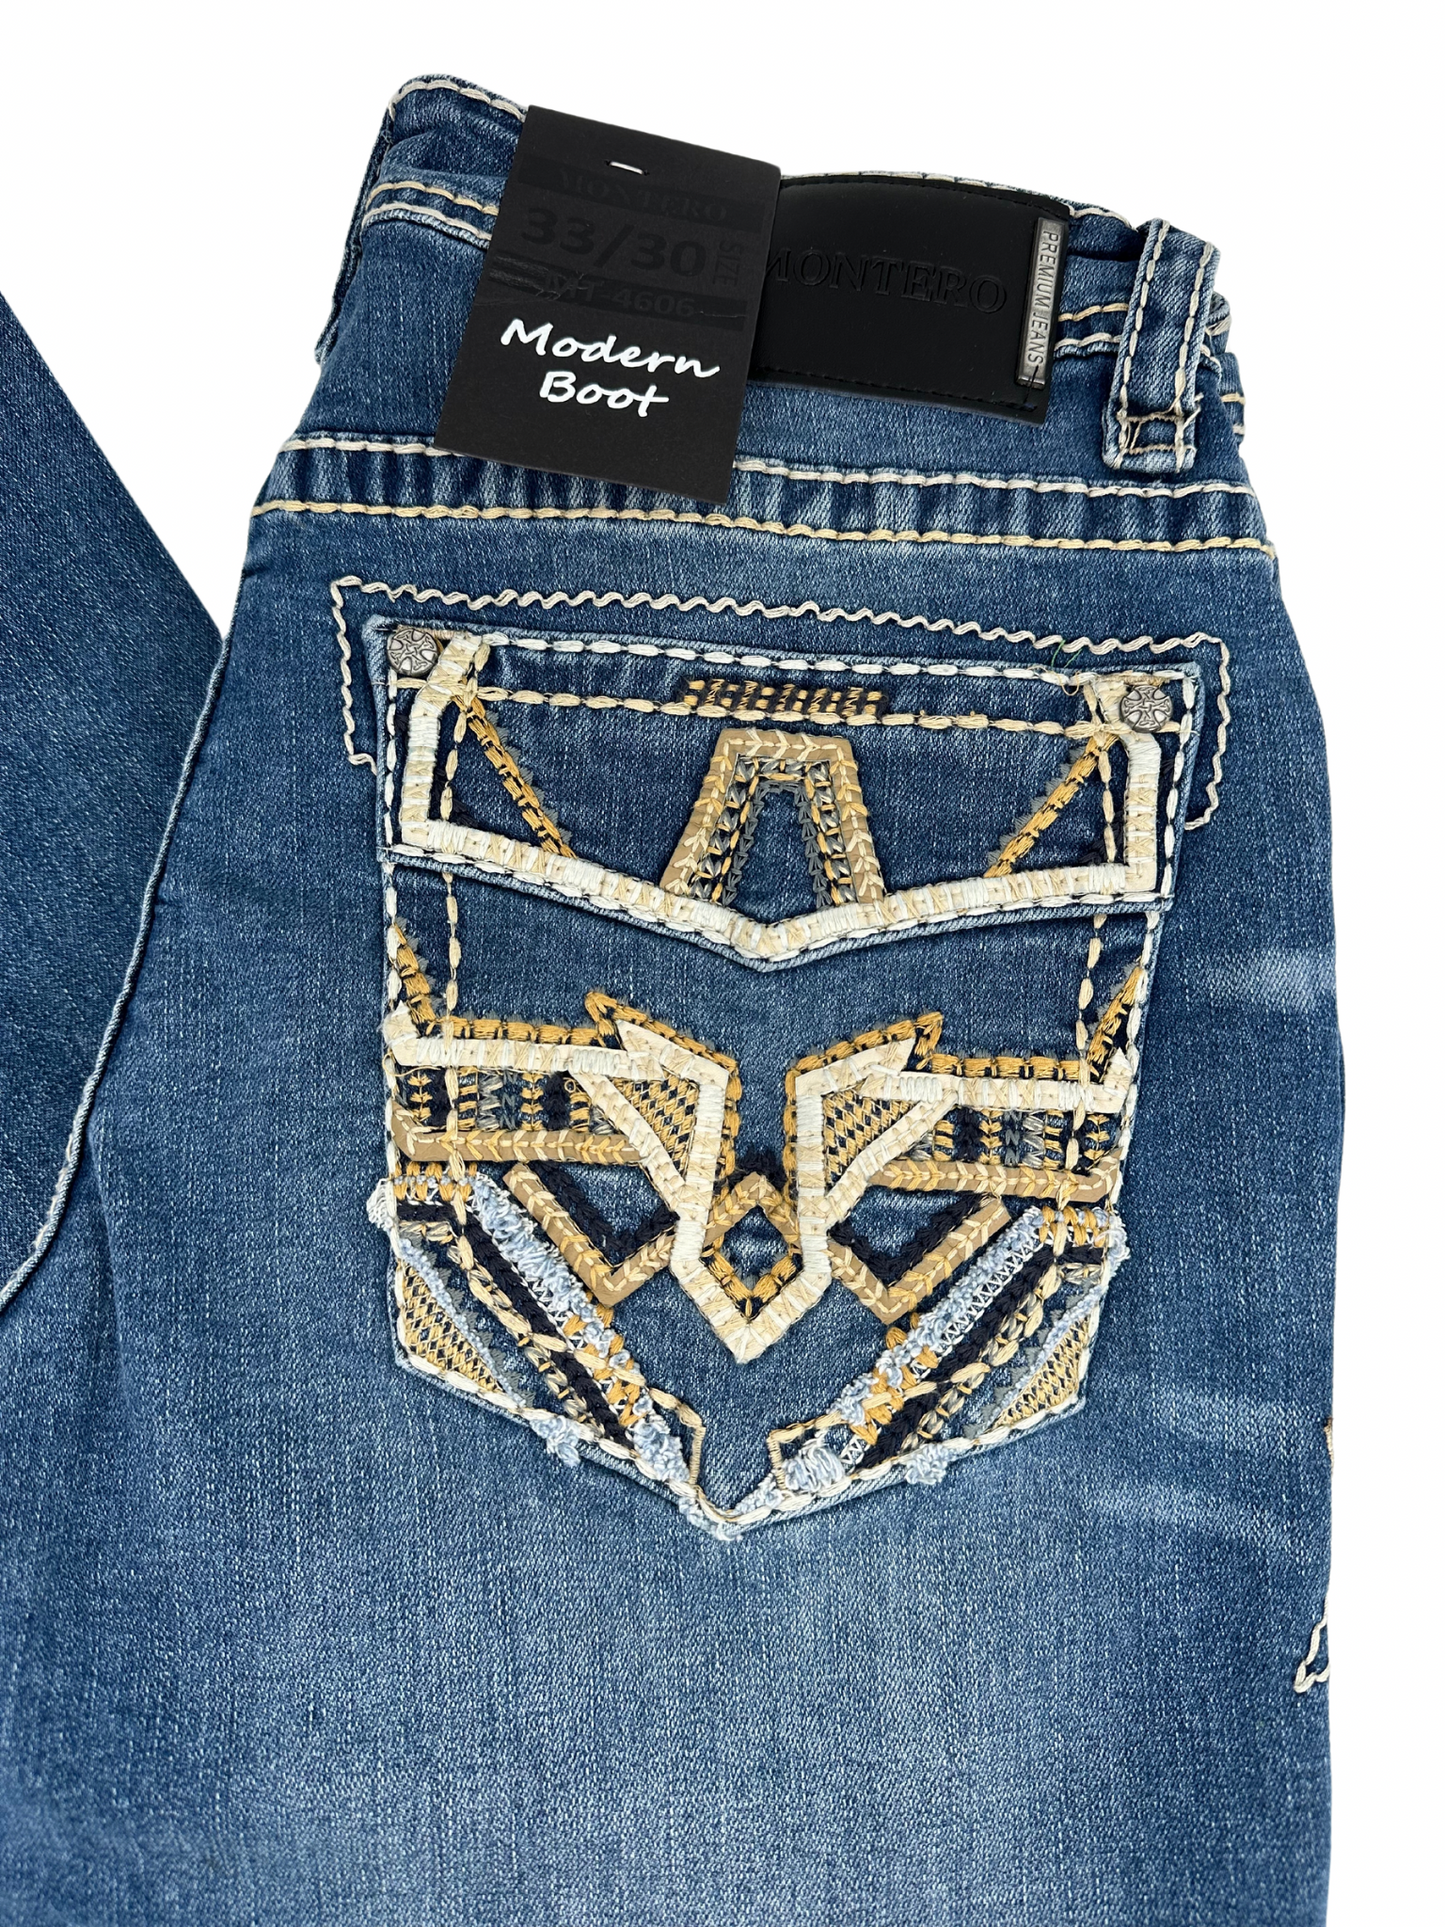 Montero Denim T Stitched Pocket Medium Blue Modern Boot Jean